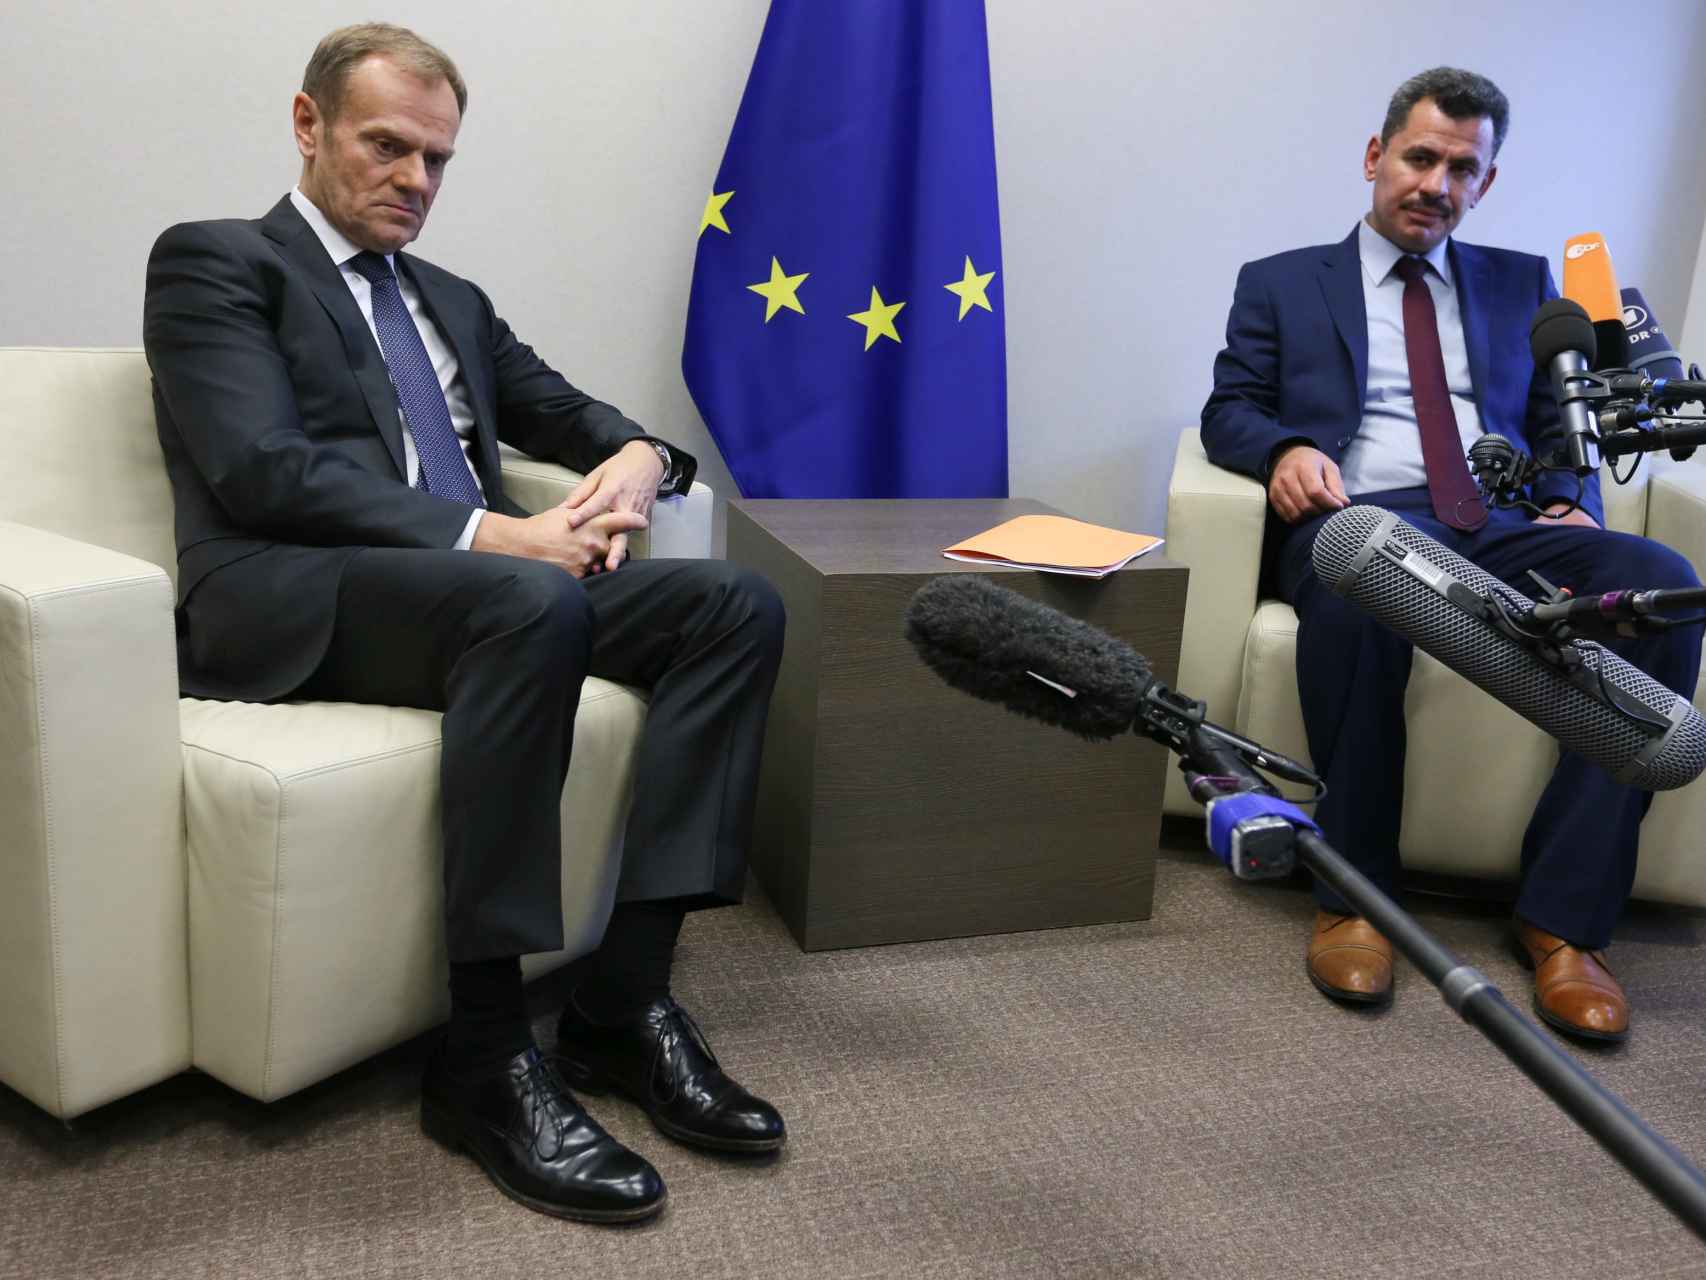 El alcalde del Alepo este ha logrado que los líderes de la UE le reciban en Bruselas